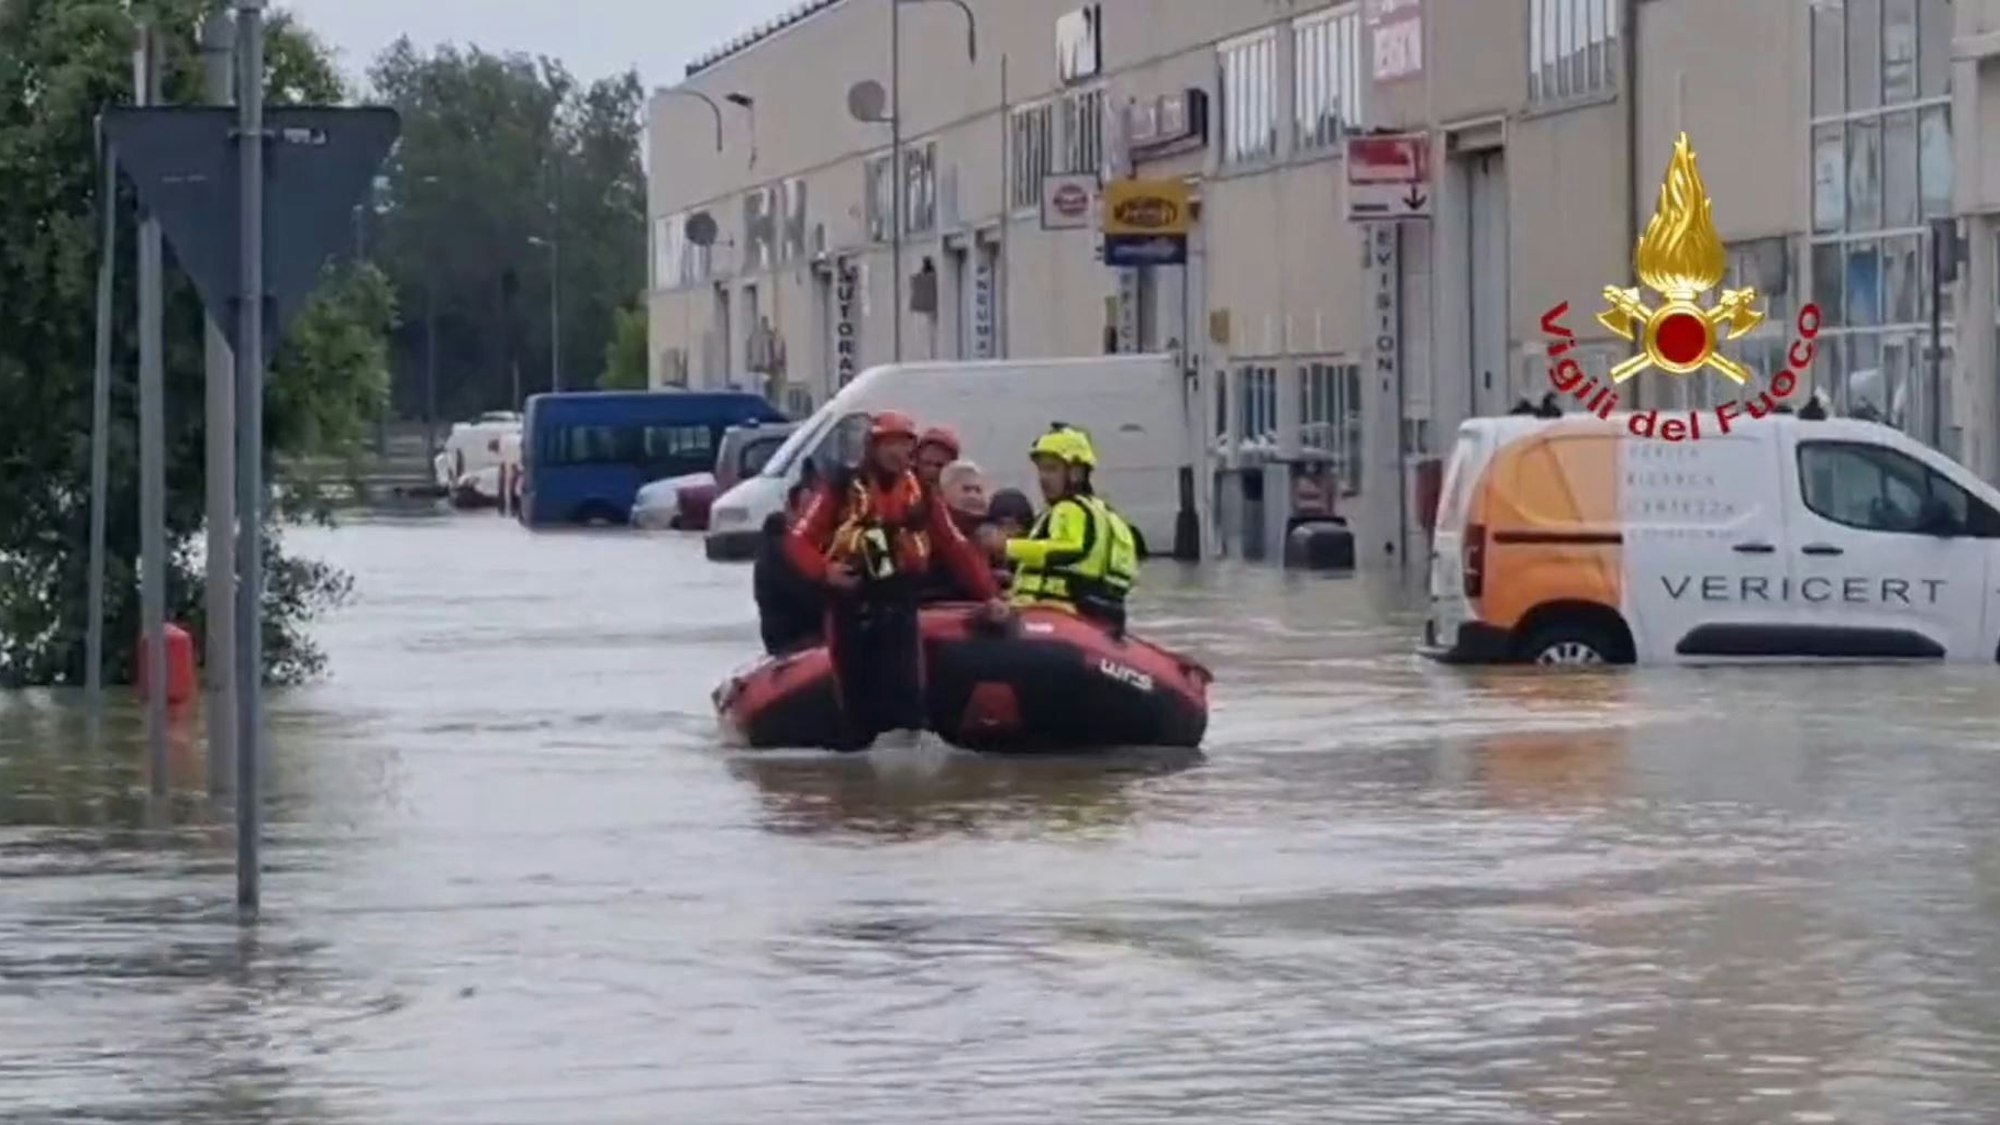 Das Standbild aus einem Video zeigt Einsatzkräfte der Feuerwehr, die mit einem Schlauchboot Personen aus einem Hotel evakuieren.